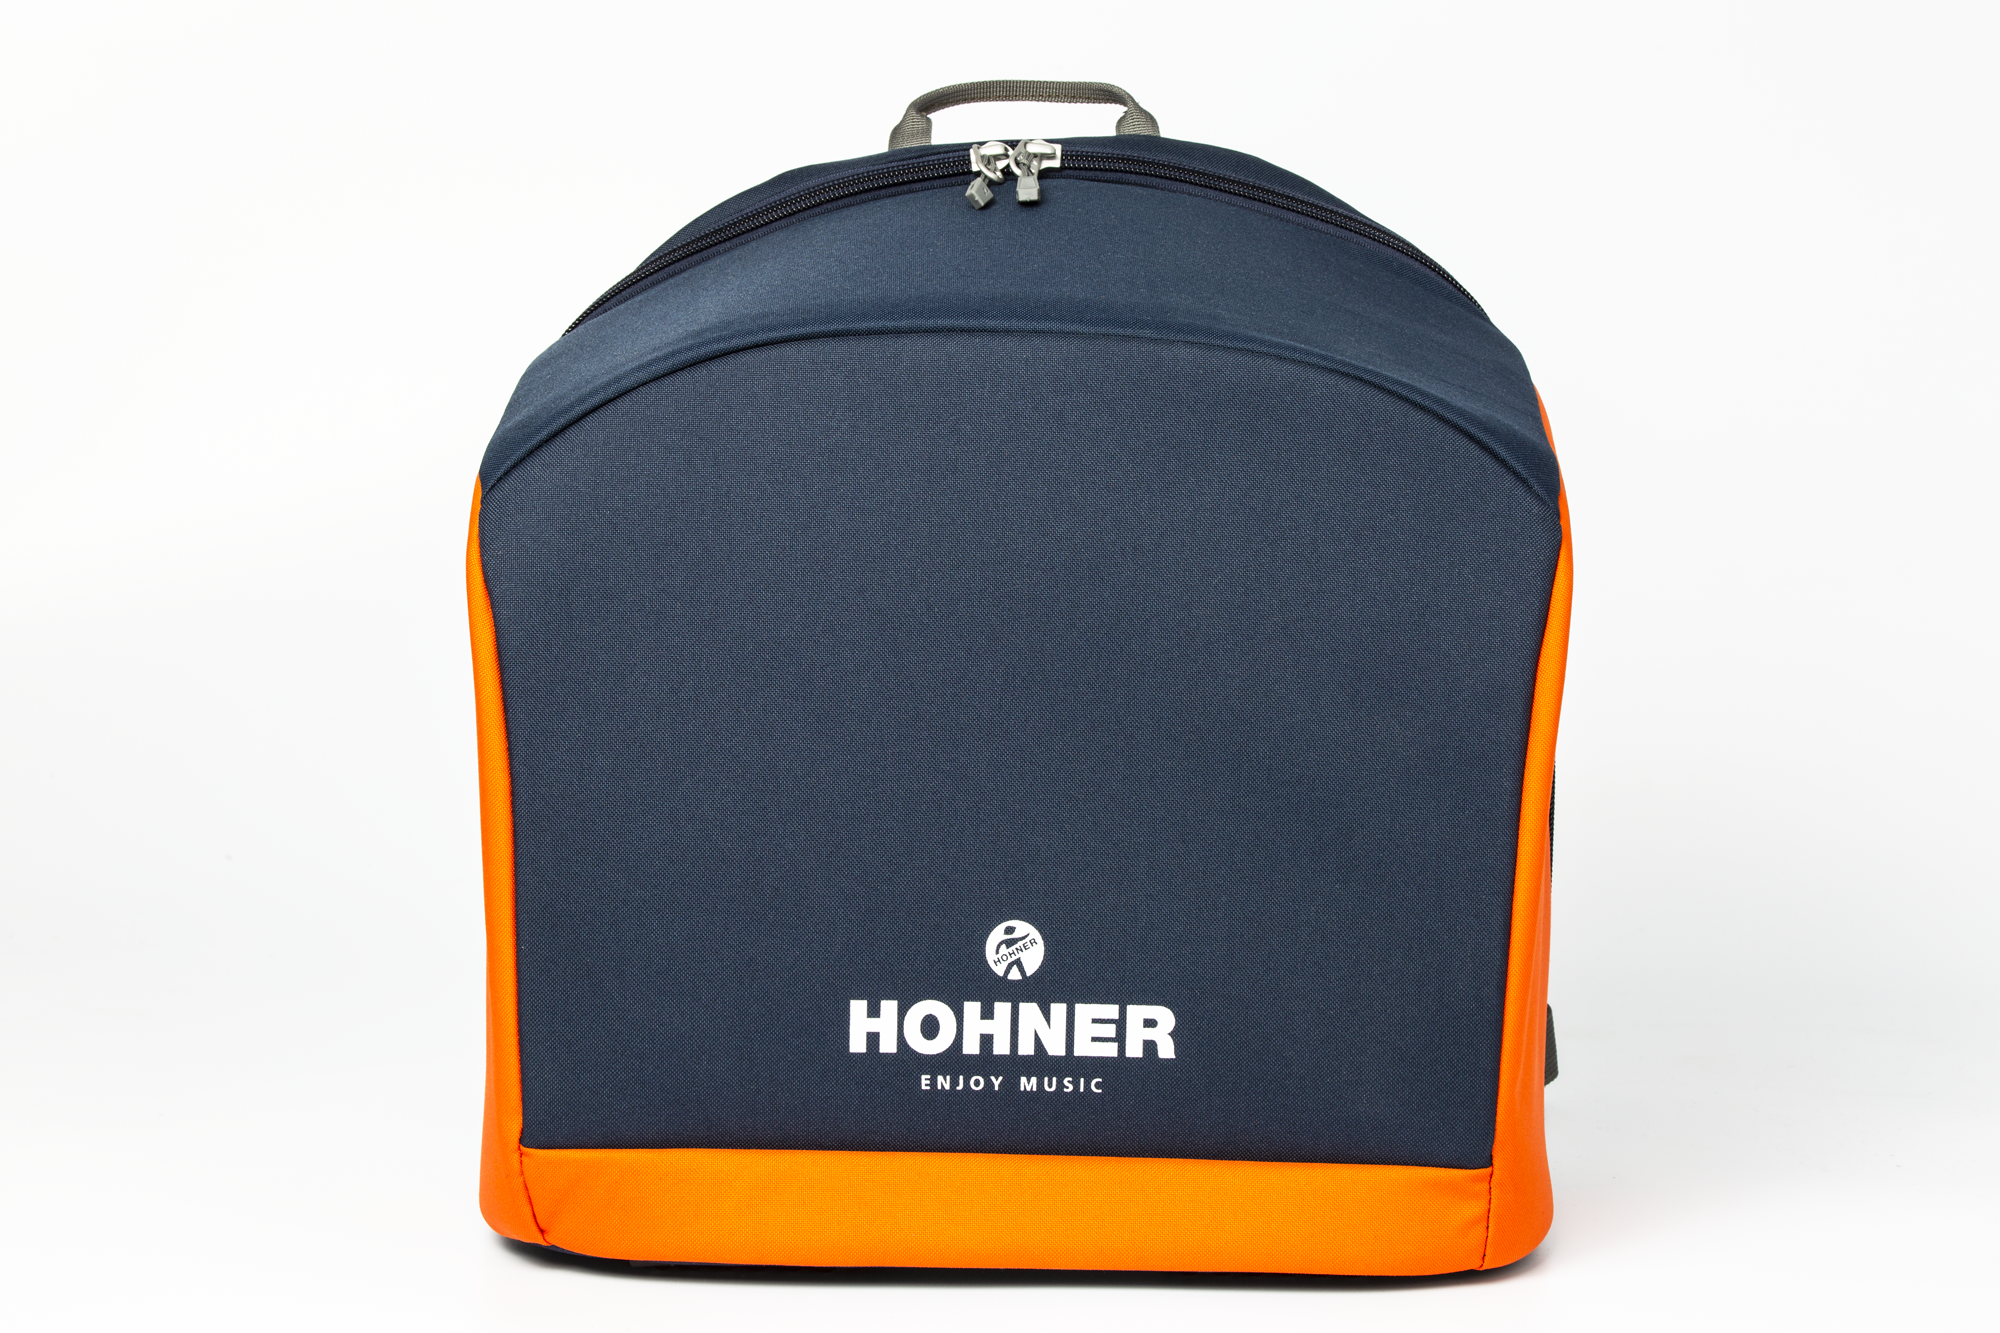 Hohner XS blau-orange